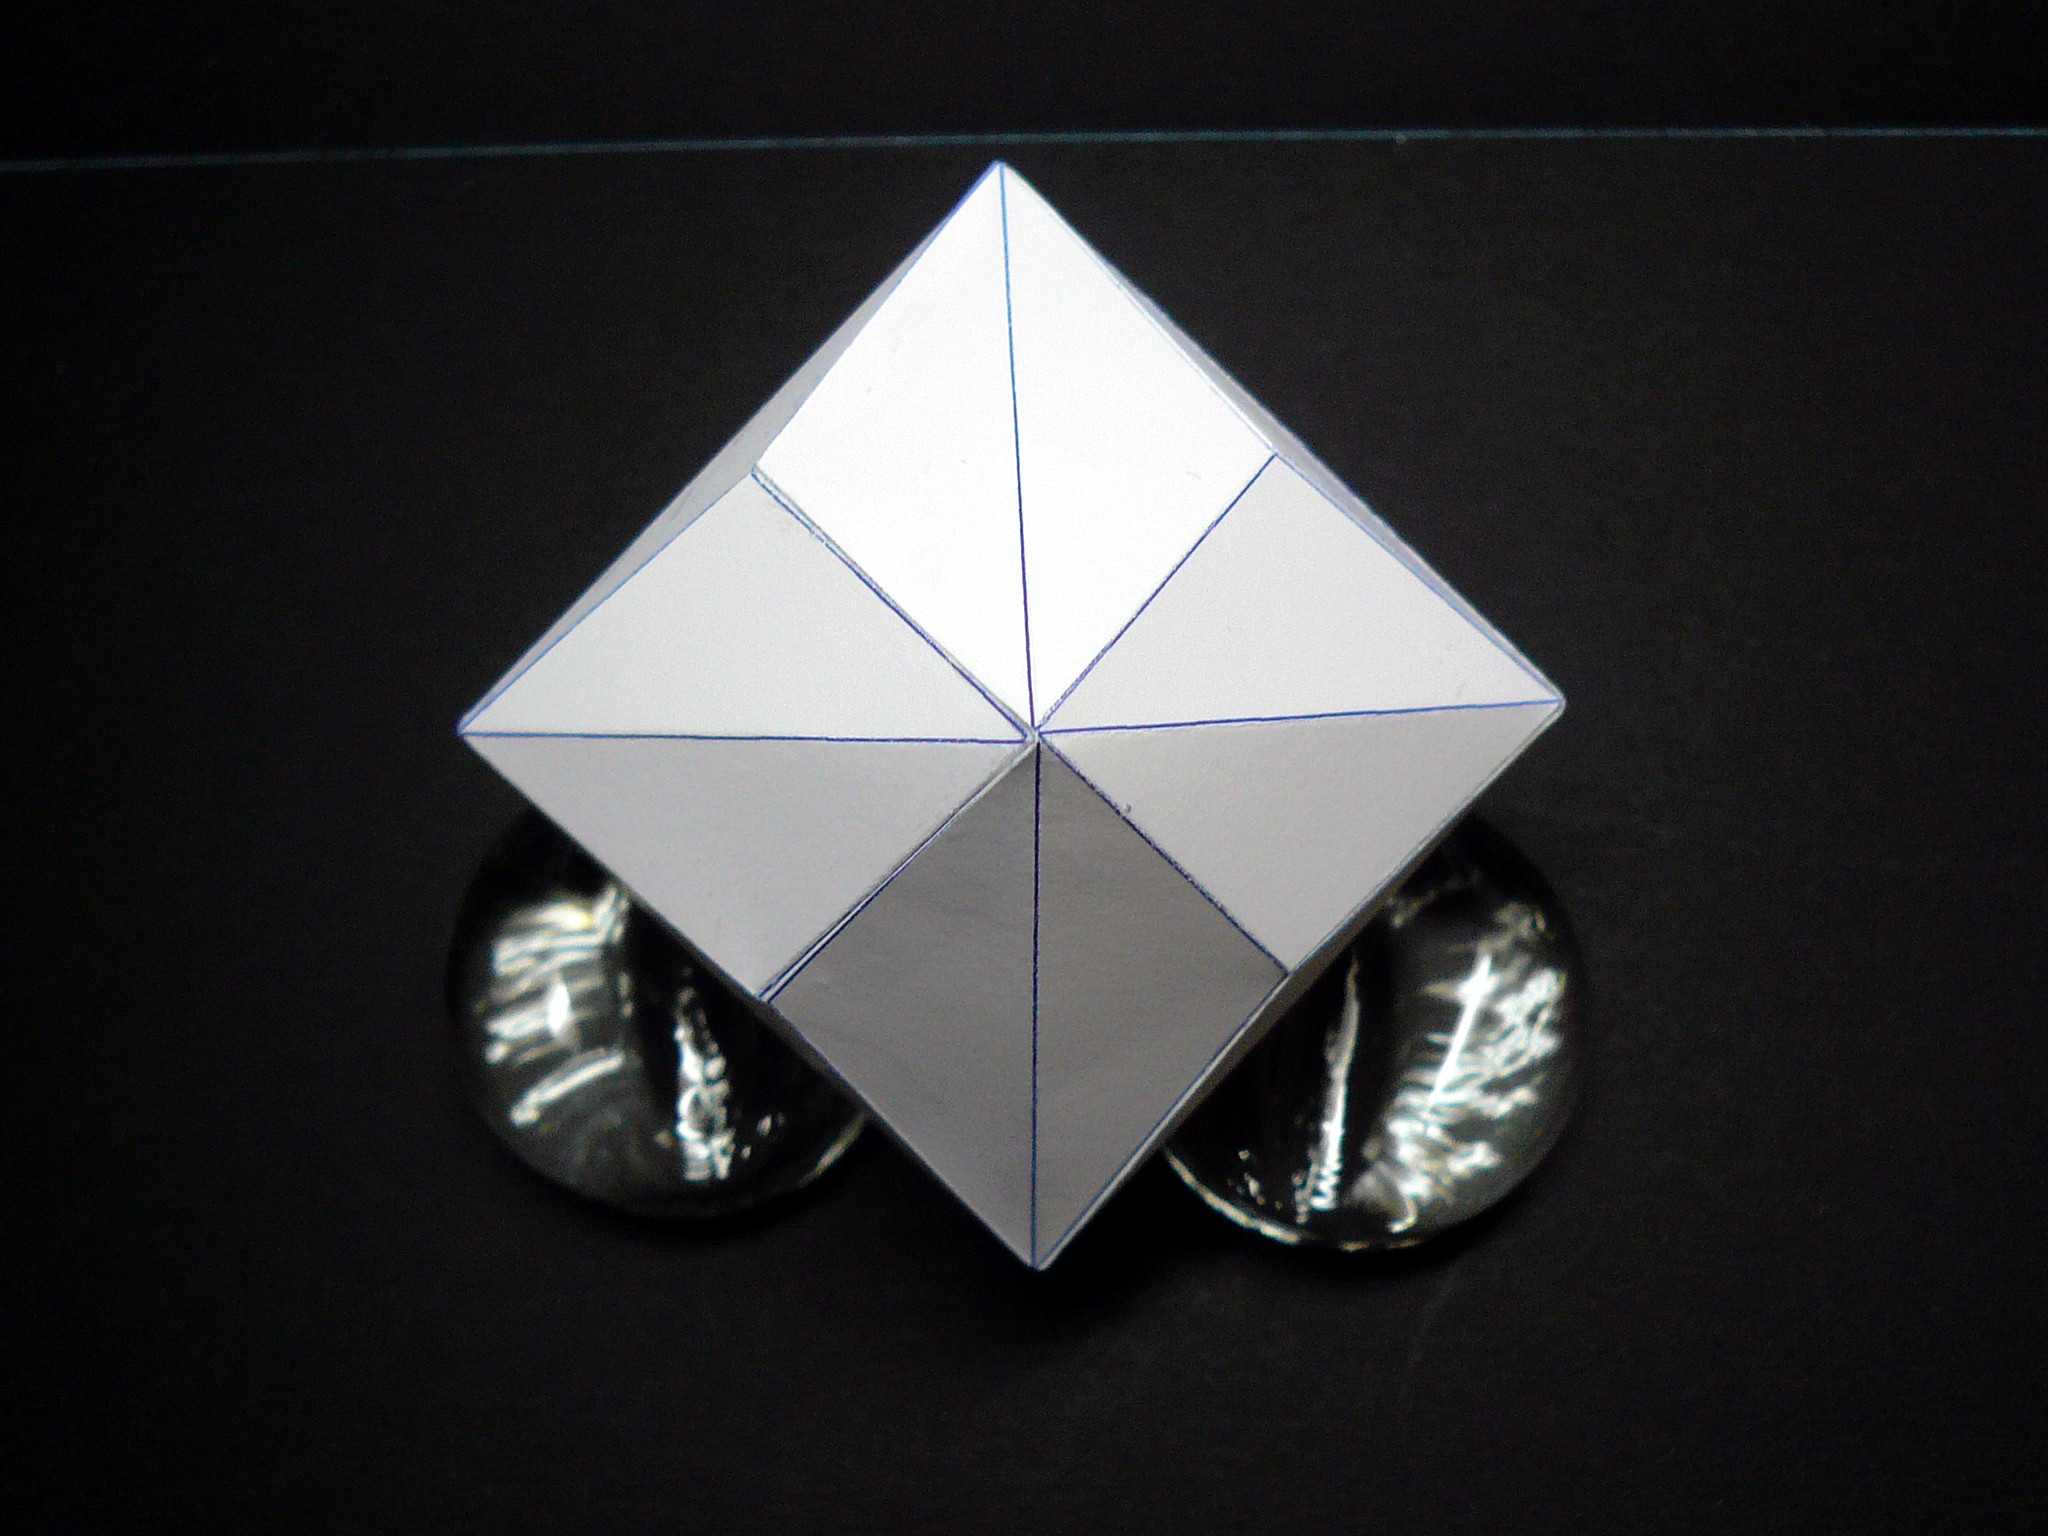 02 三方八面体 The Triakisoctahedron 3 8 8